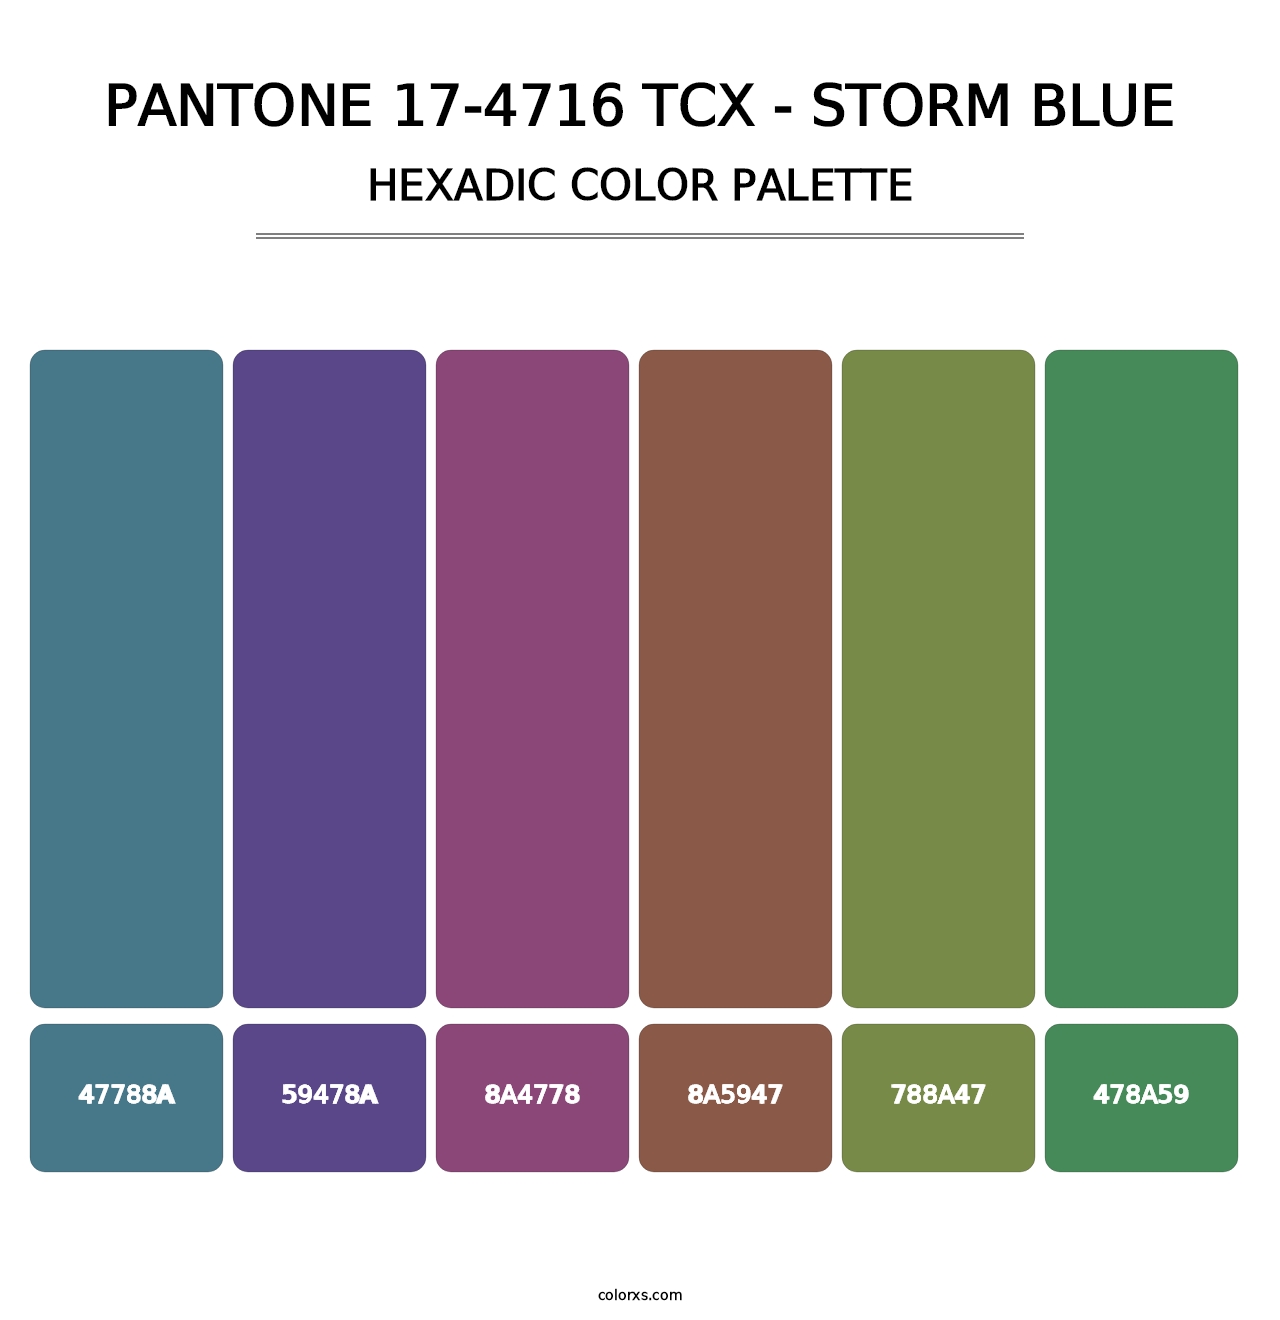 PANTONE 17-4716 TCX - Storm Blue - Hexadic Color Palette